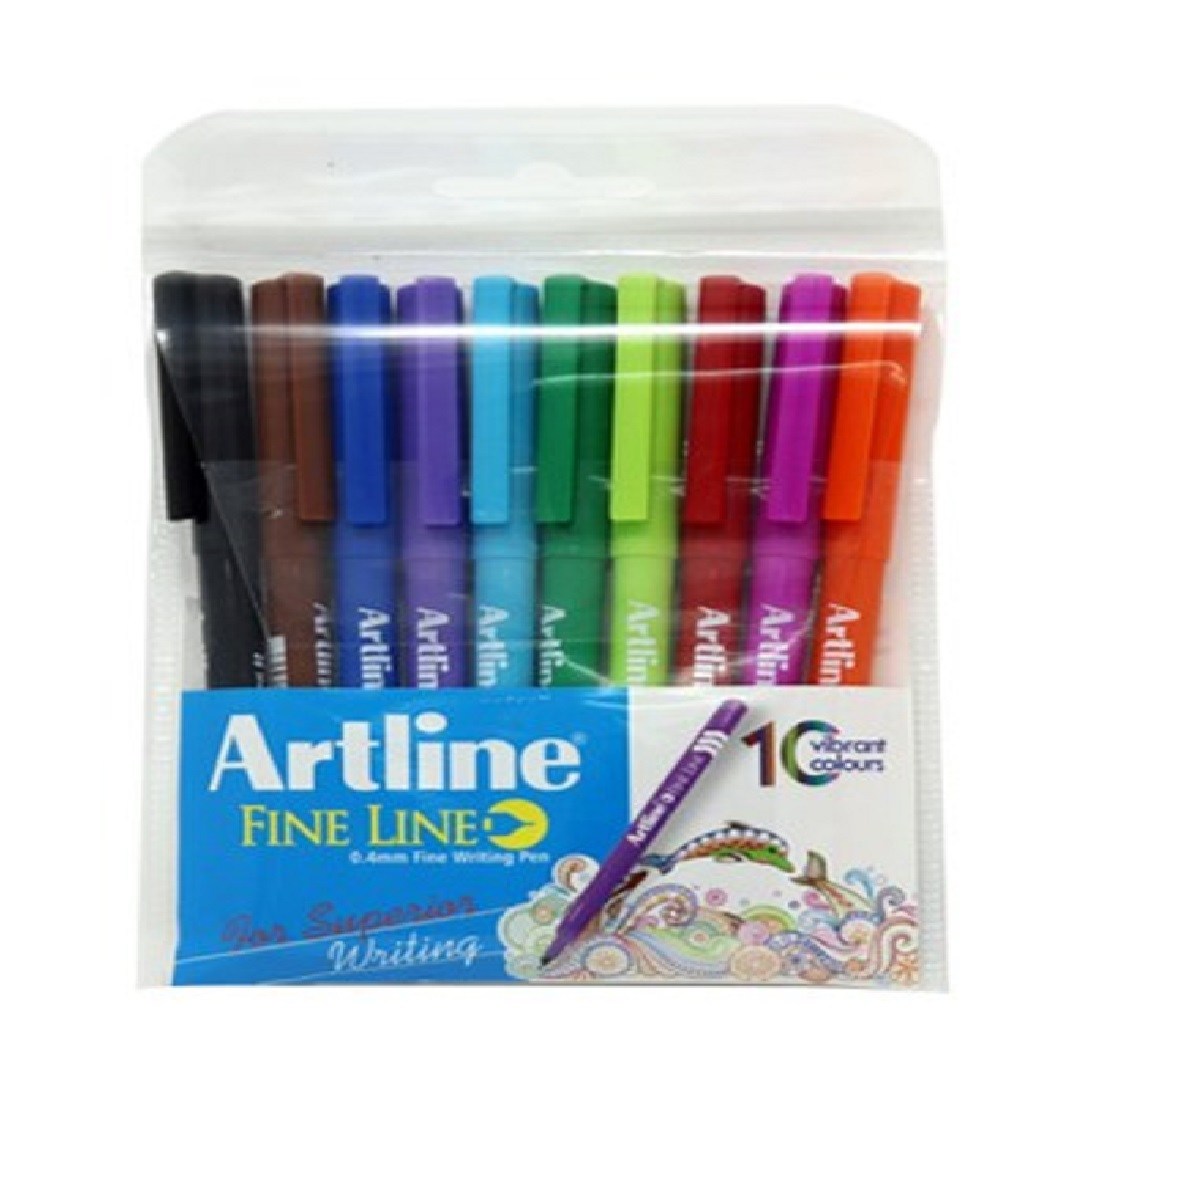 Artline Fine Line 0.4mm Fine Writing Pen Green